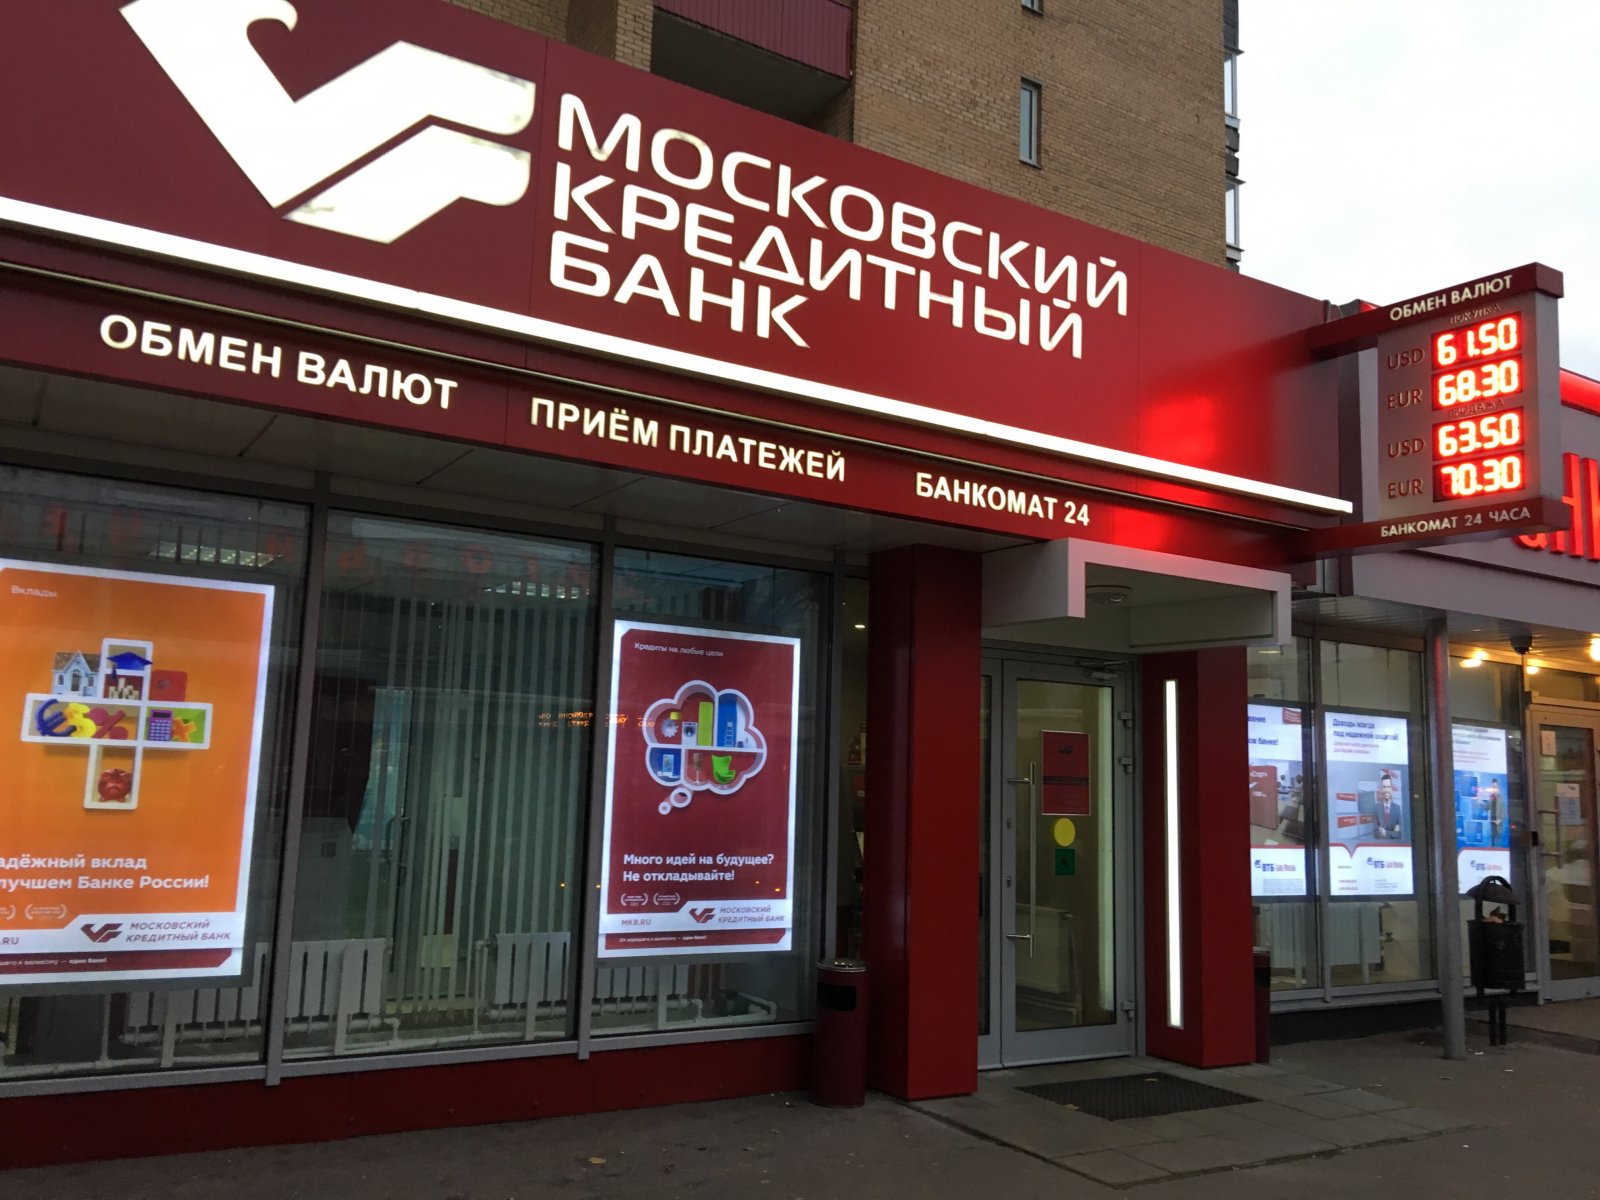 Как подать заявку на кредит в Московский Кредитный Банк — МКБ?